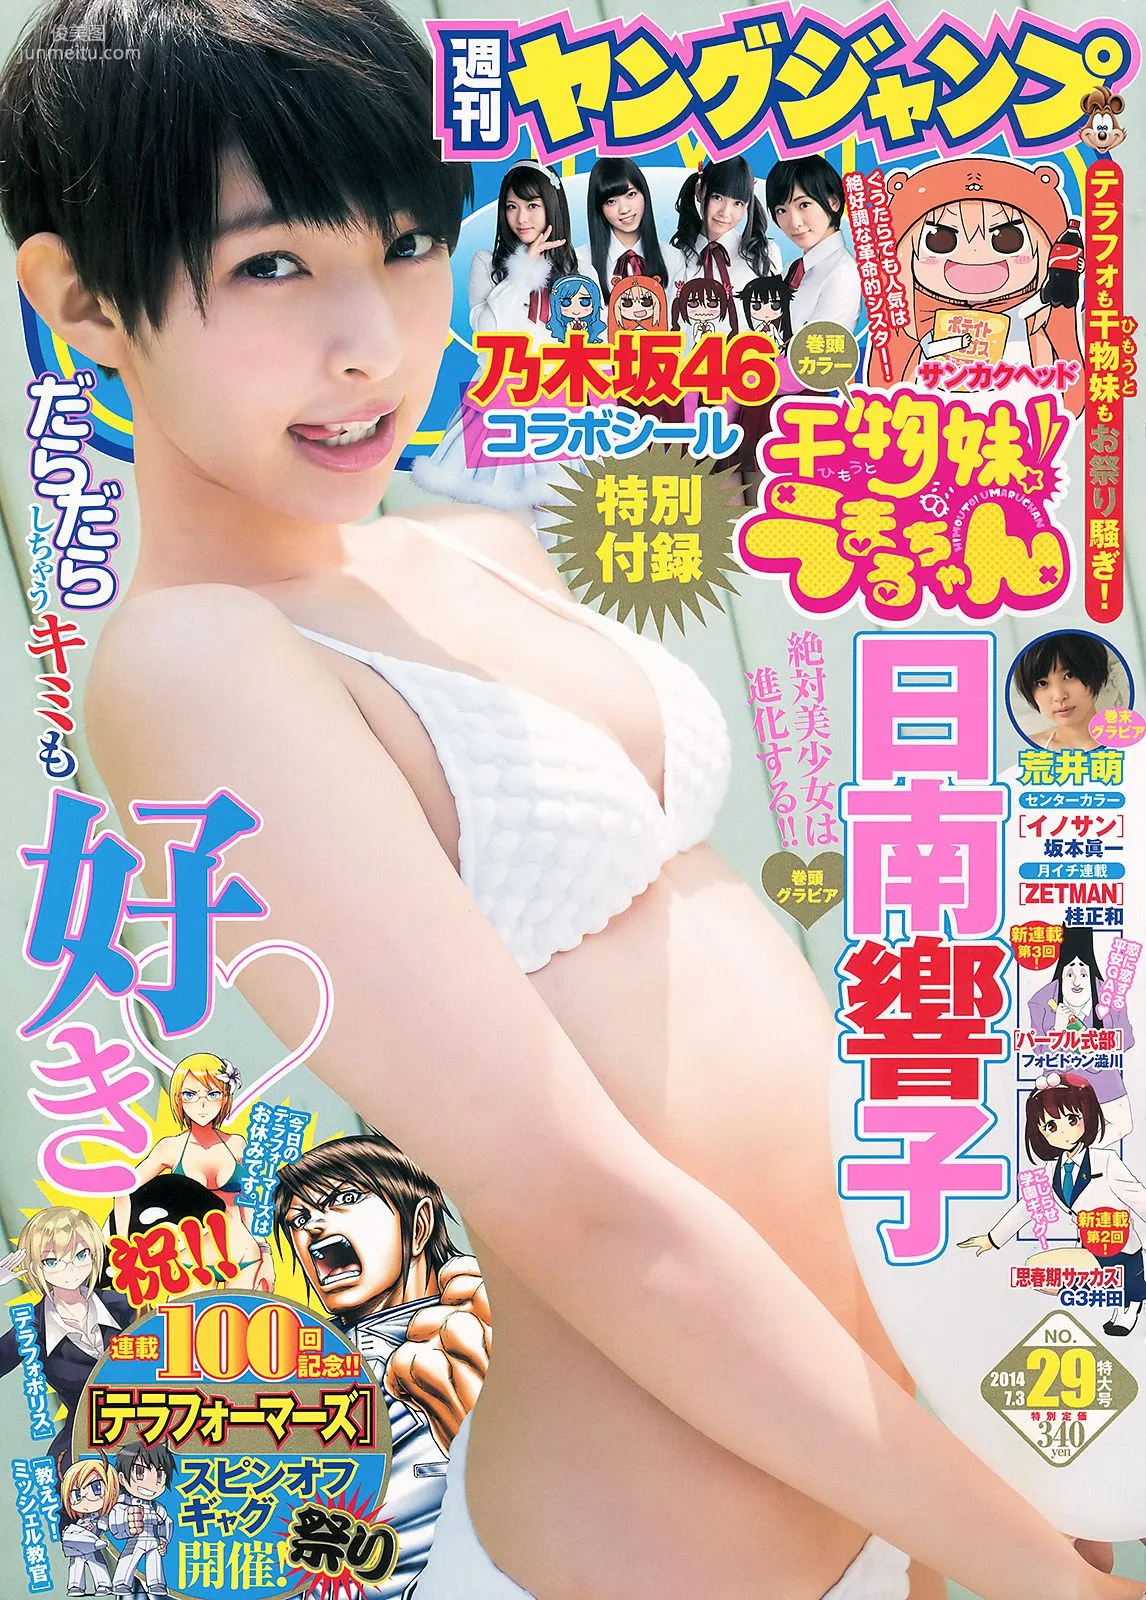 日南響子 荒井萌 [Weekly Young Jump 週刊ヤングジャンプ] 2014年No.29 写真杂志1